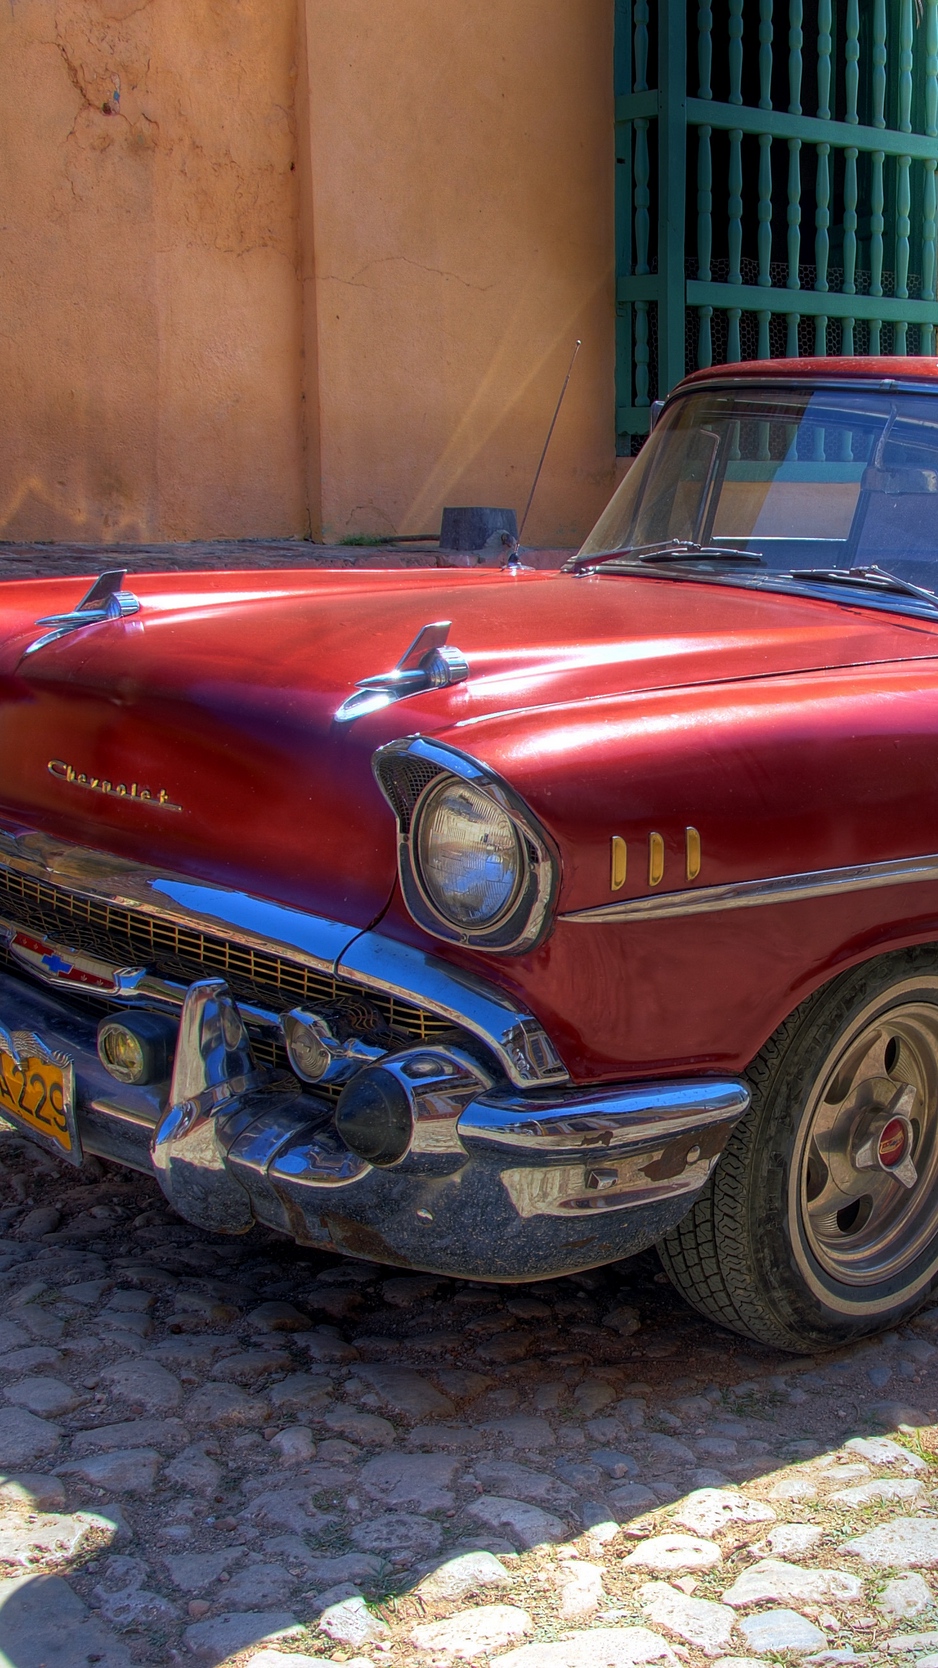 Wallpaper Chevrolet, Old, Retro, Cars, Car, Cuba, Havana - Cuba Car , HD Wallpaper & Backgrounds